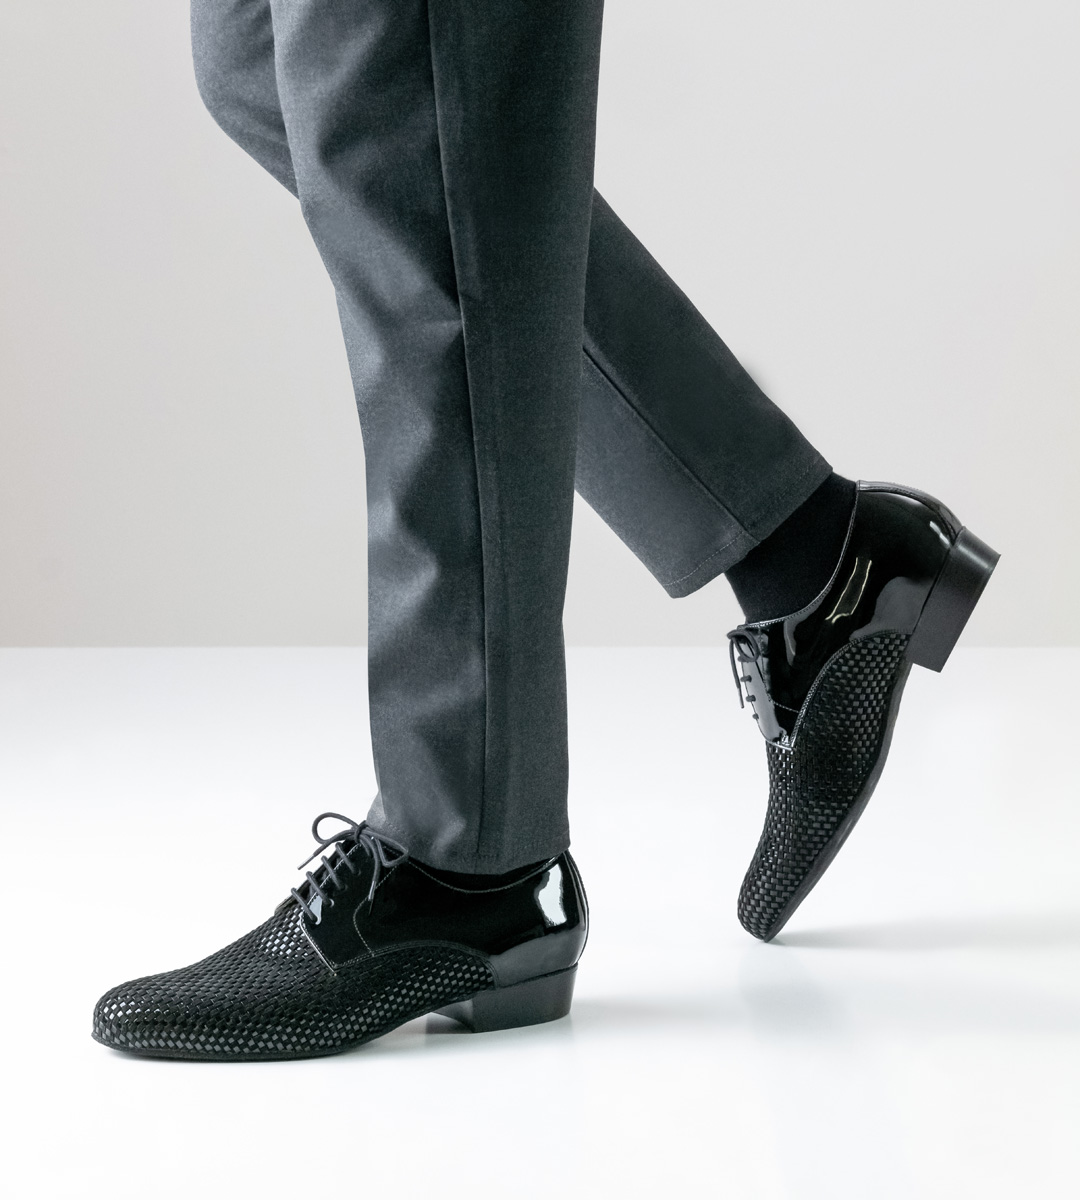 Chaussures de danse pour hommes de Nueva Epoca avec un talon de 2,5 cm de haut